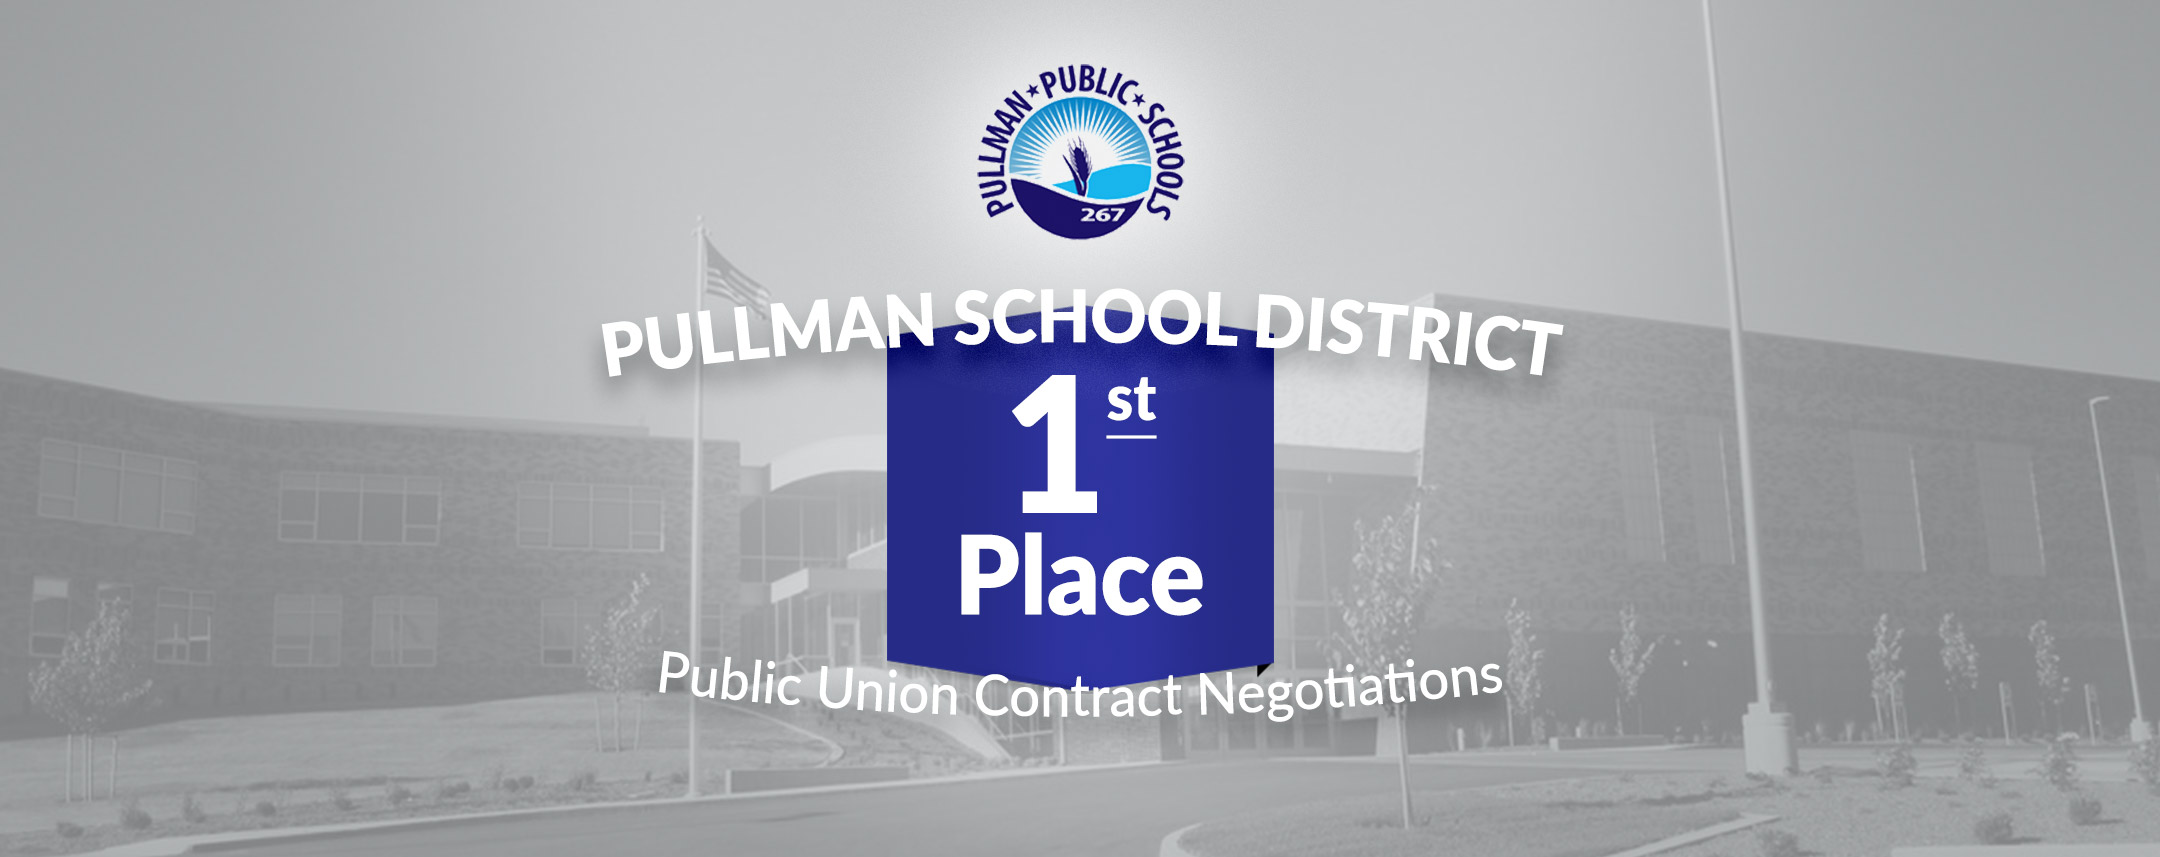 Pullman-School-District-FEATURED.jpg